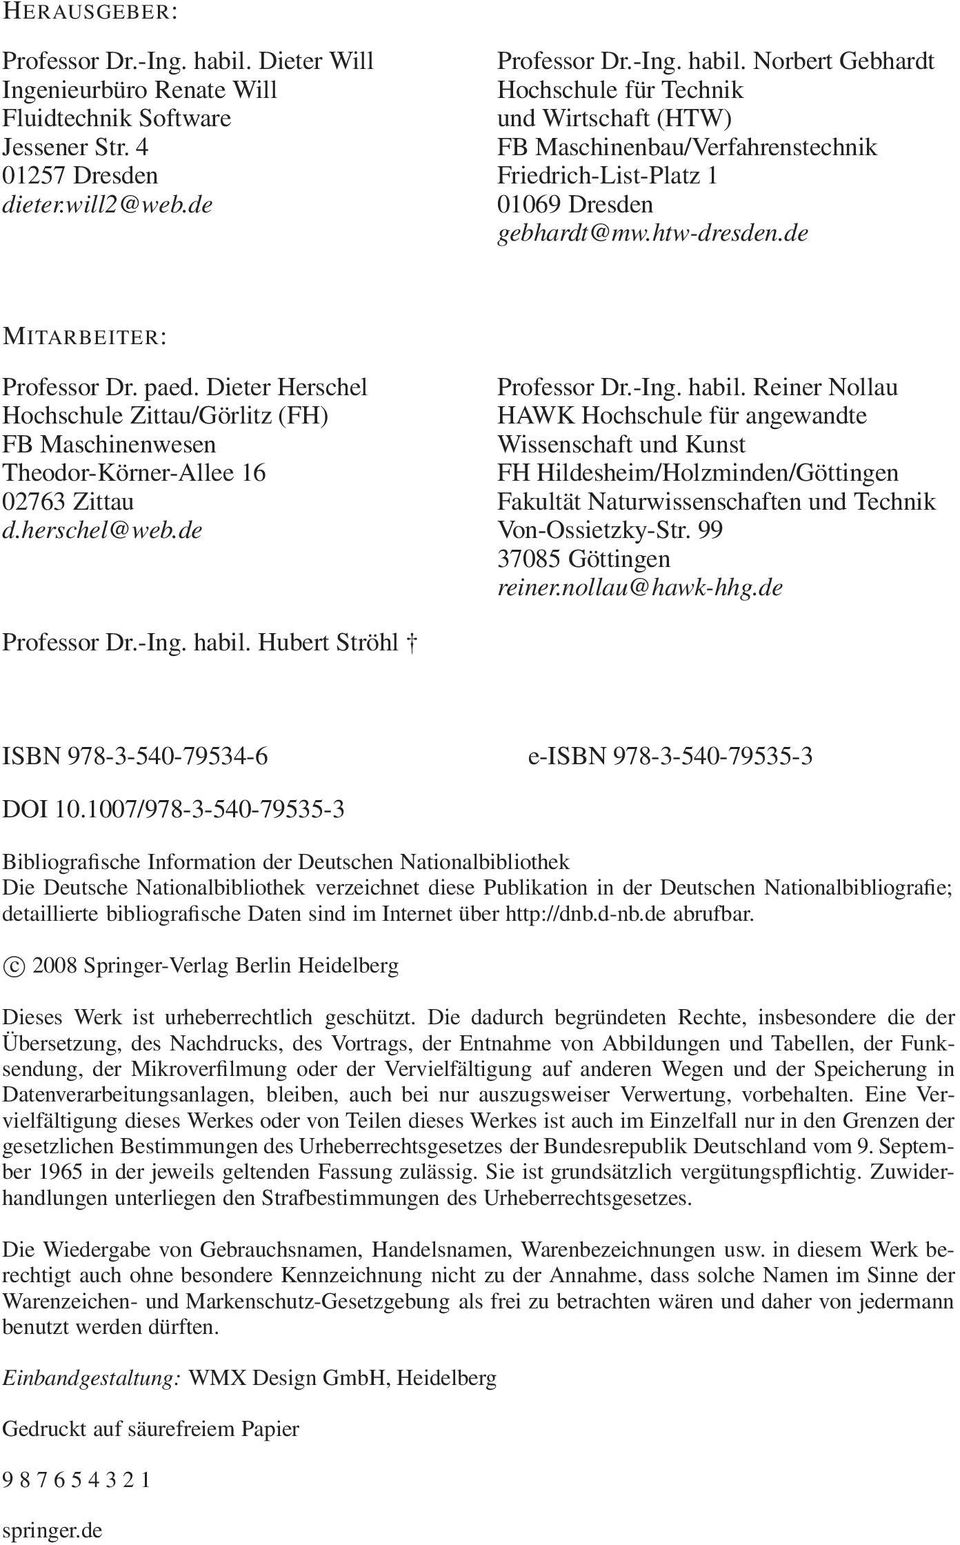 Reiner Nollau HAWK Hochschule für angewandte Wissenschaft und Kunst FH Hildesheim/Holzminden/Göttingen Fakultät Naturwissenschaften und Technik Von-Ossietzky-Str. 99 37085 Göttingen reiner.